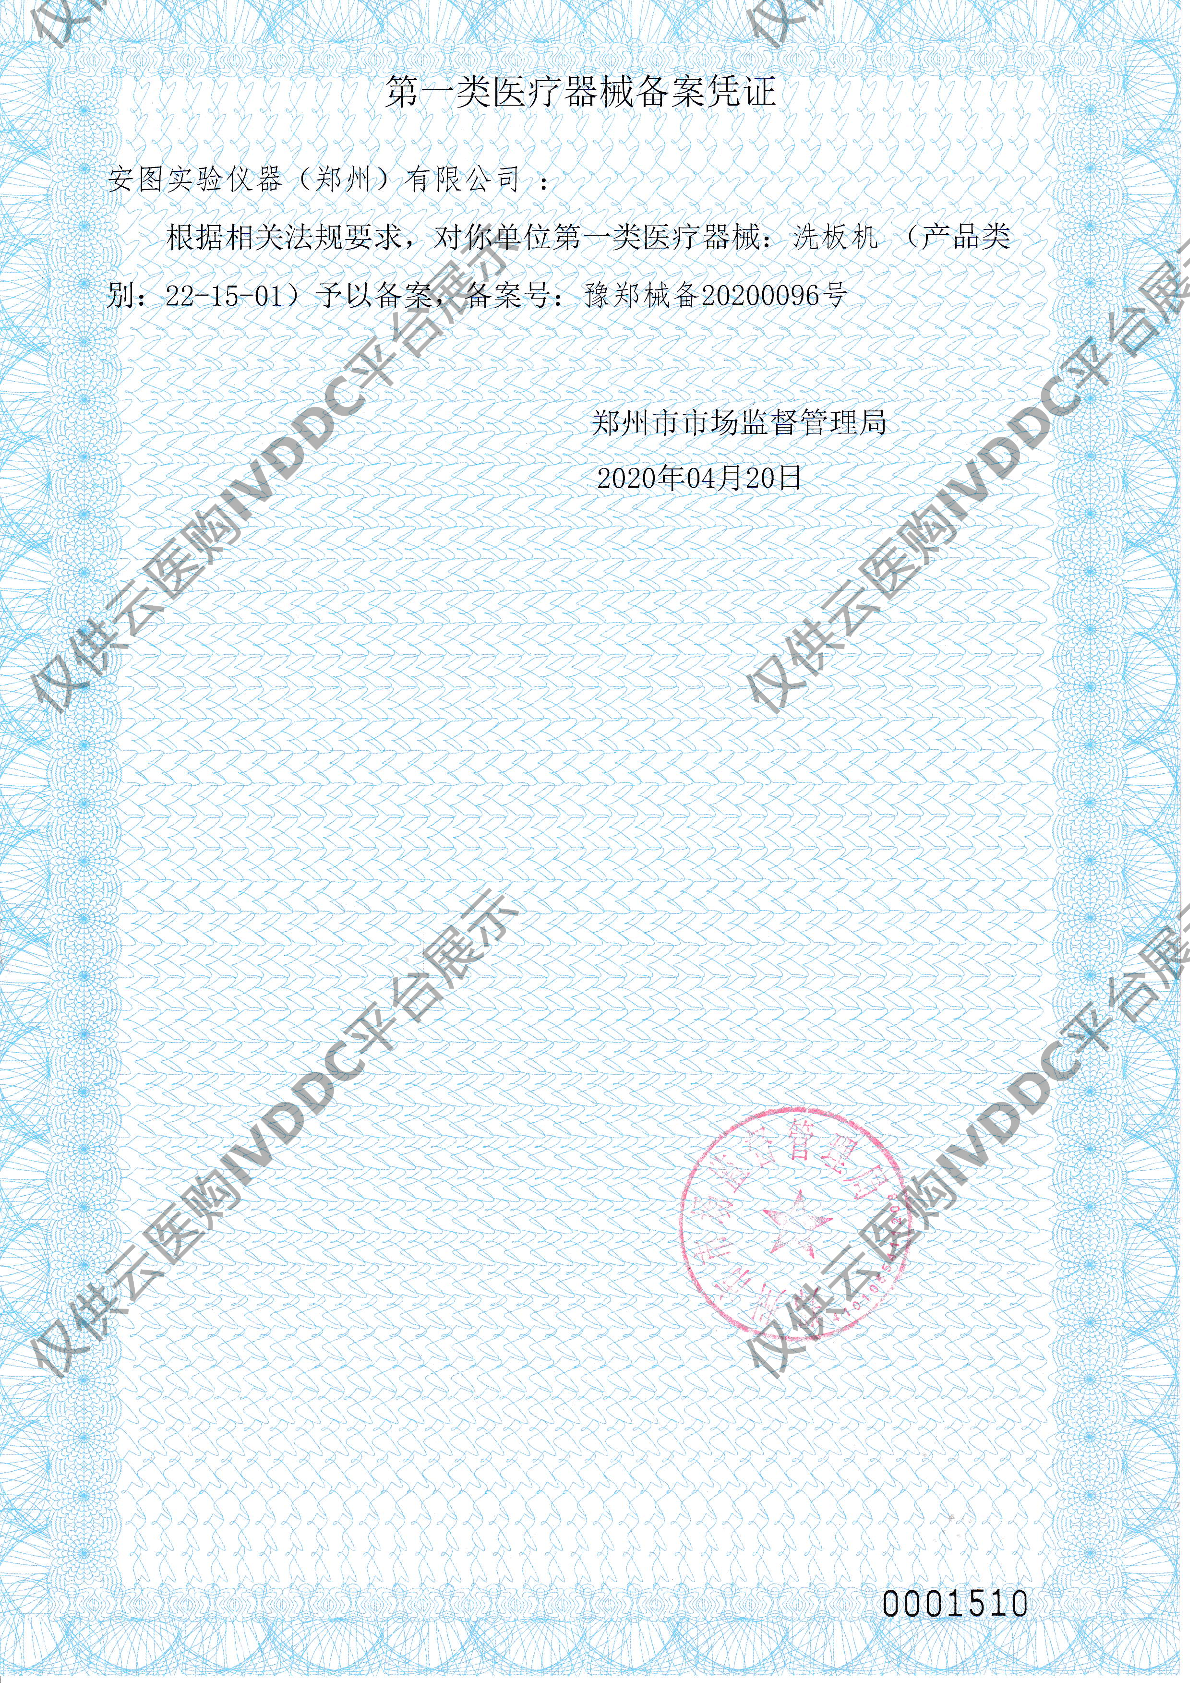 【安图】洗板机IWO-960注册证